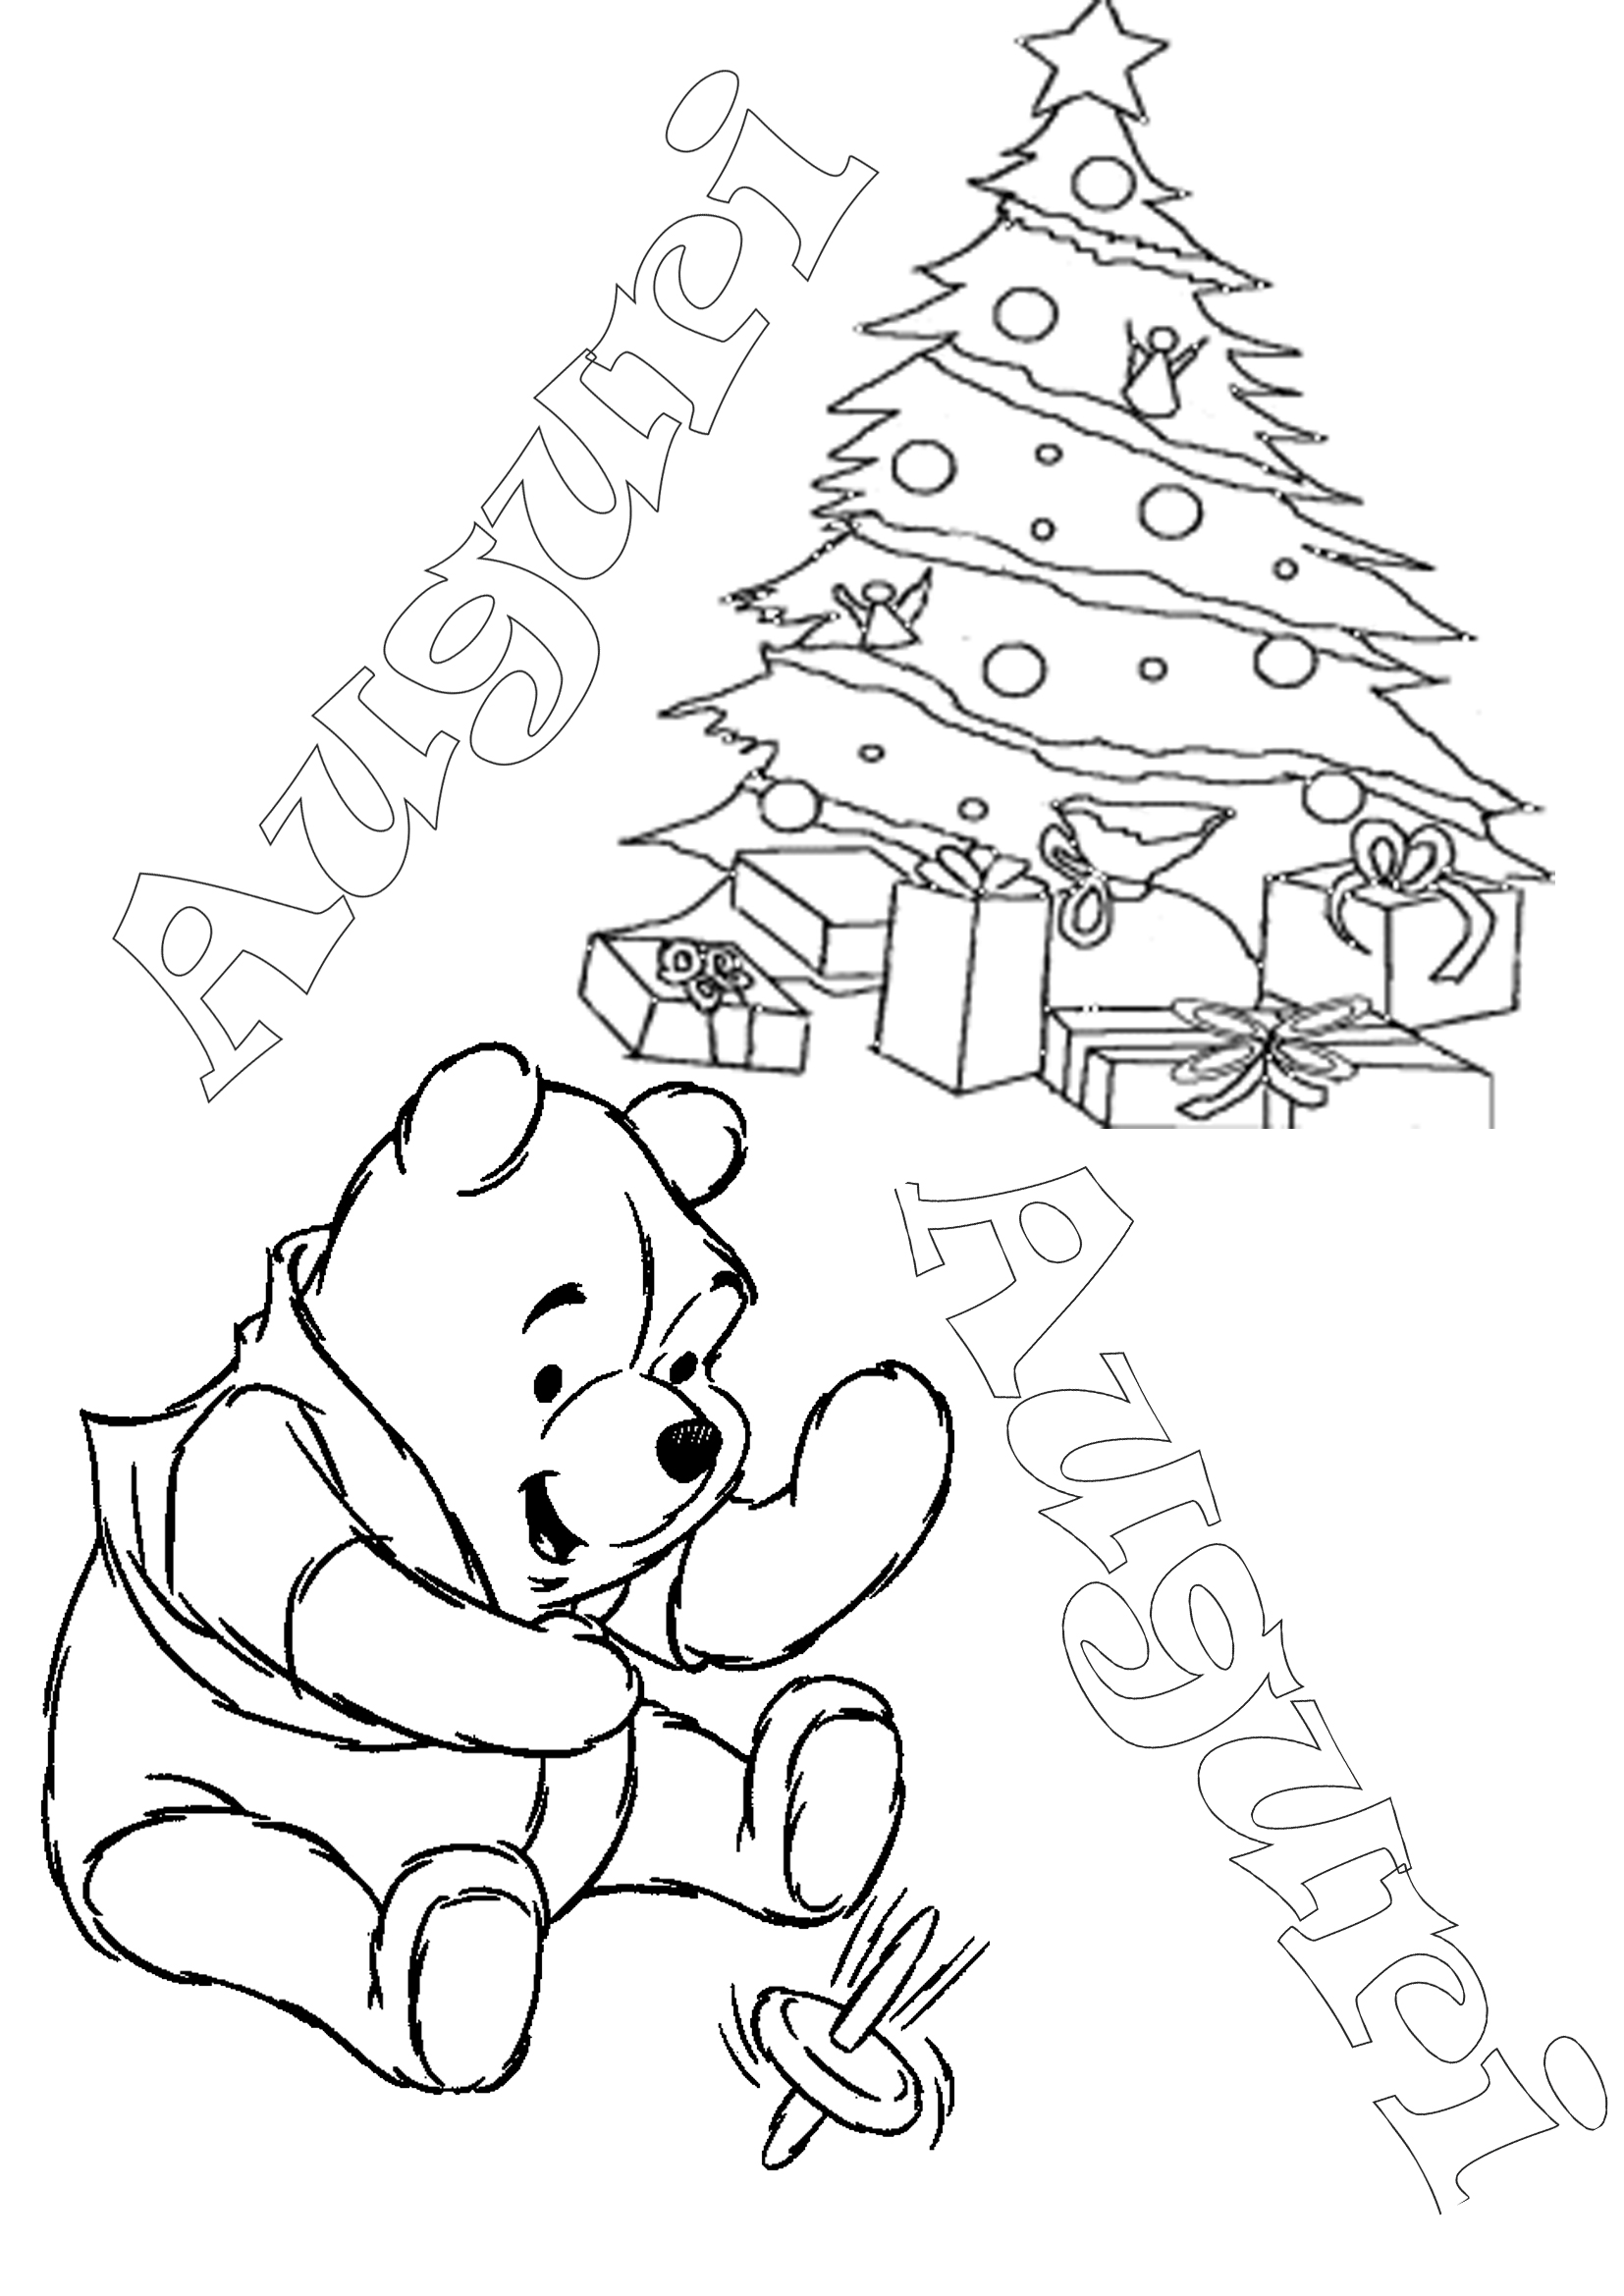 Disegni Di Natale Winnie Pooh.Winnie The Pooh Da Colorare Auguri Di Natale Appunti Di Scuola